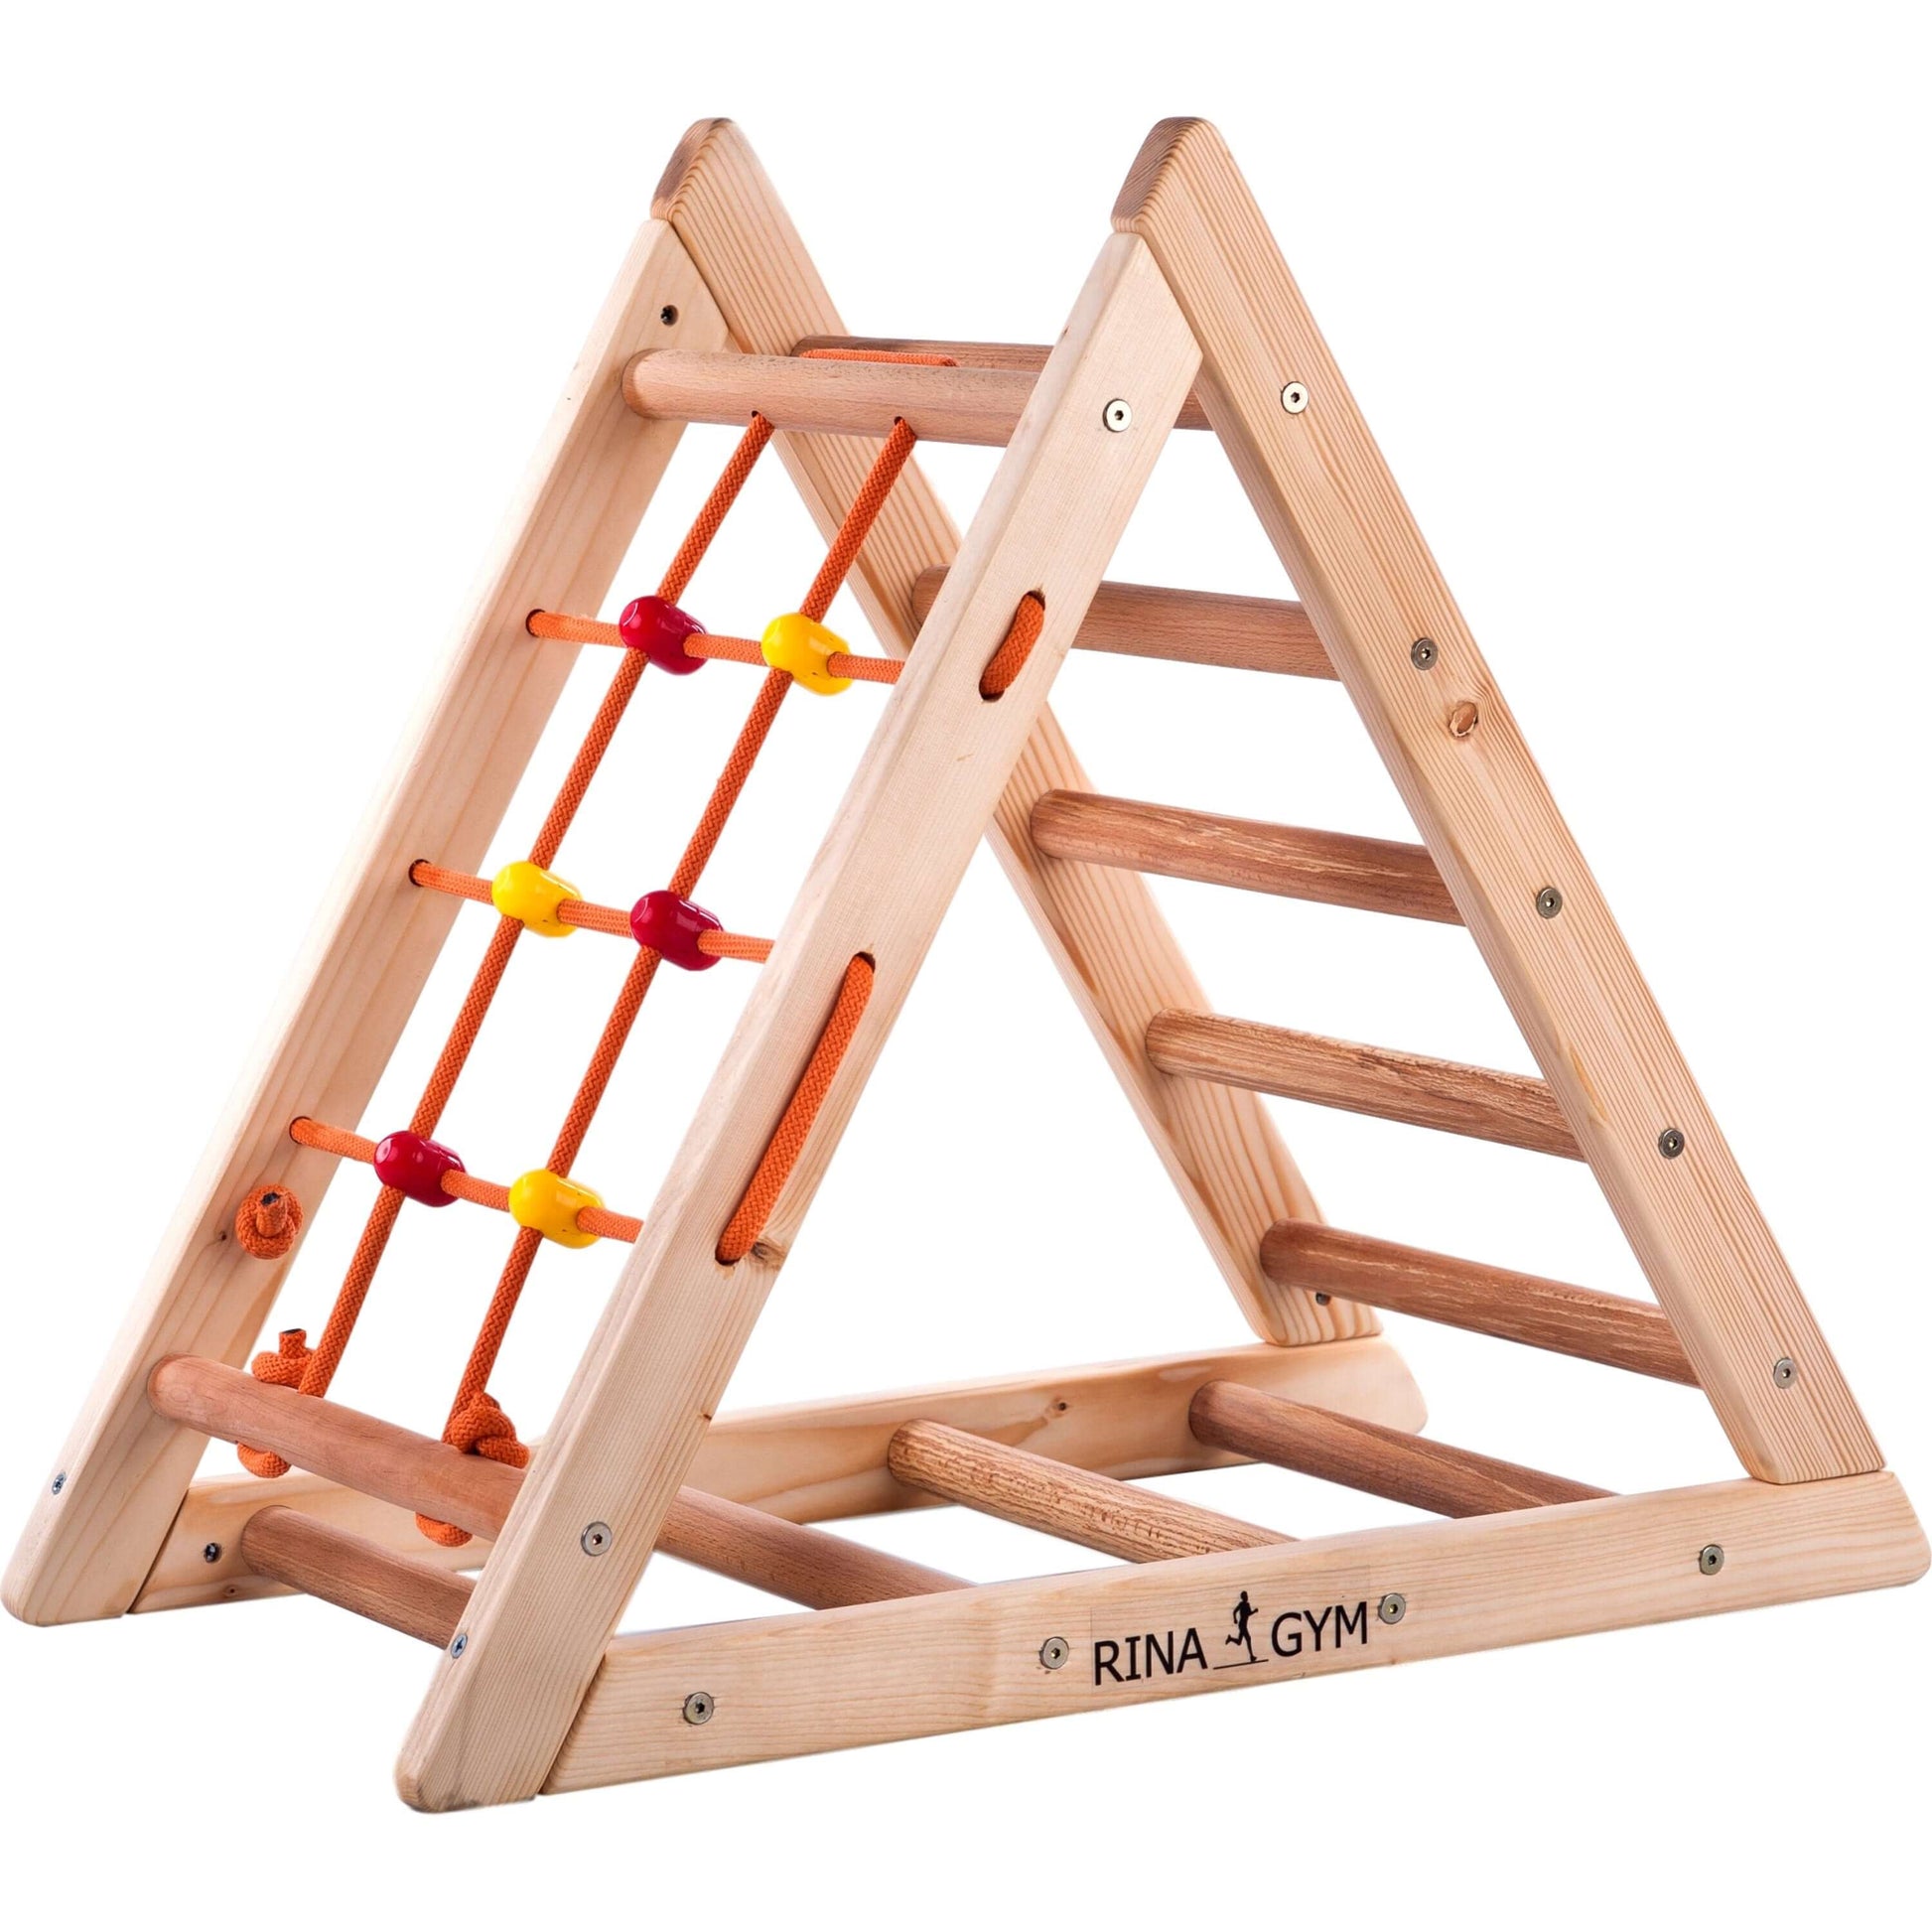 Kletterdreieck für Kinder -Klettergerüst aus Holz - Leiter, Spielnetz - IndoorSpielplatz, Spielturm, Kletterturm für Kinder - Hält bis zu 60kg Gewicht